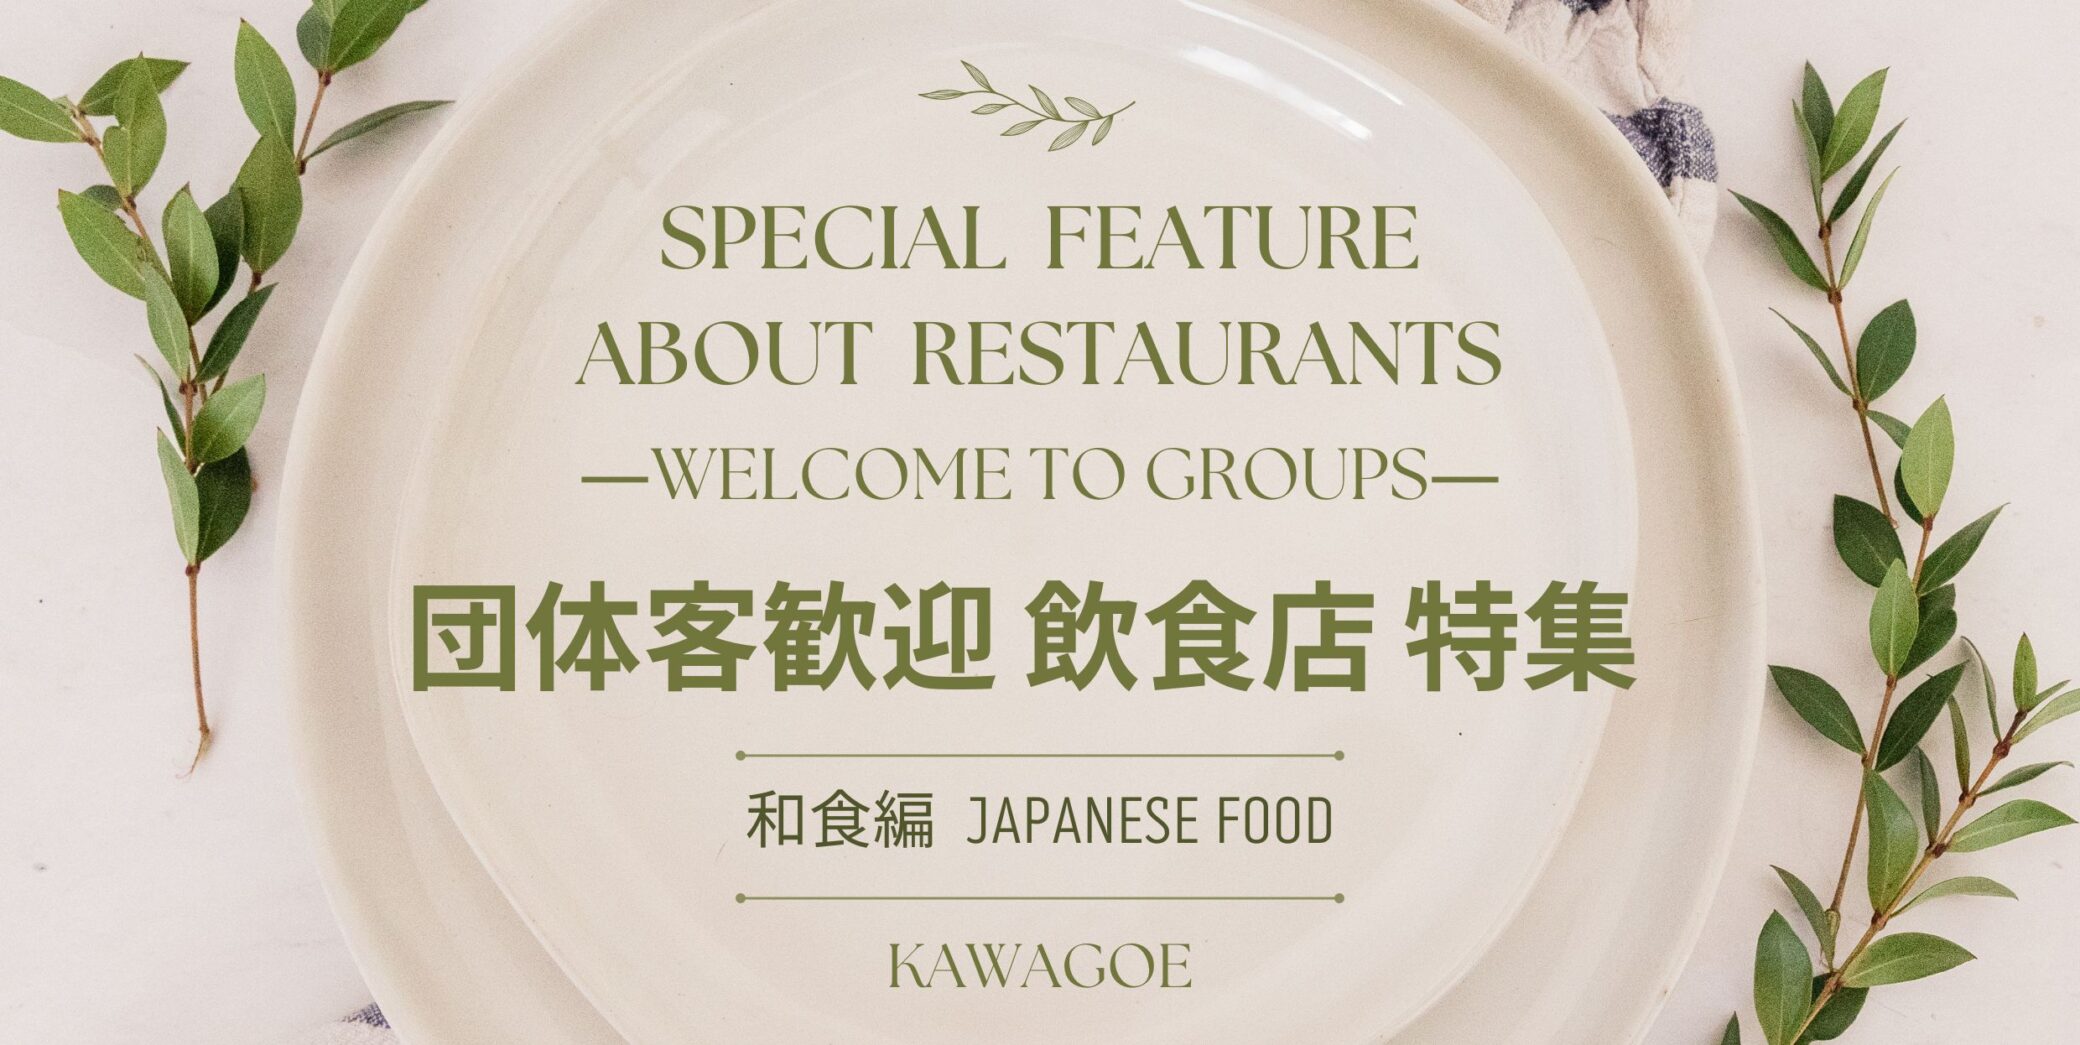 🍴Besonderes Angebot für Restaurants, in denen Gruppengäste willkommen sind – japanische Küche – 🎉